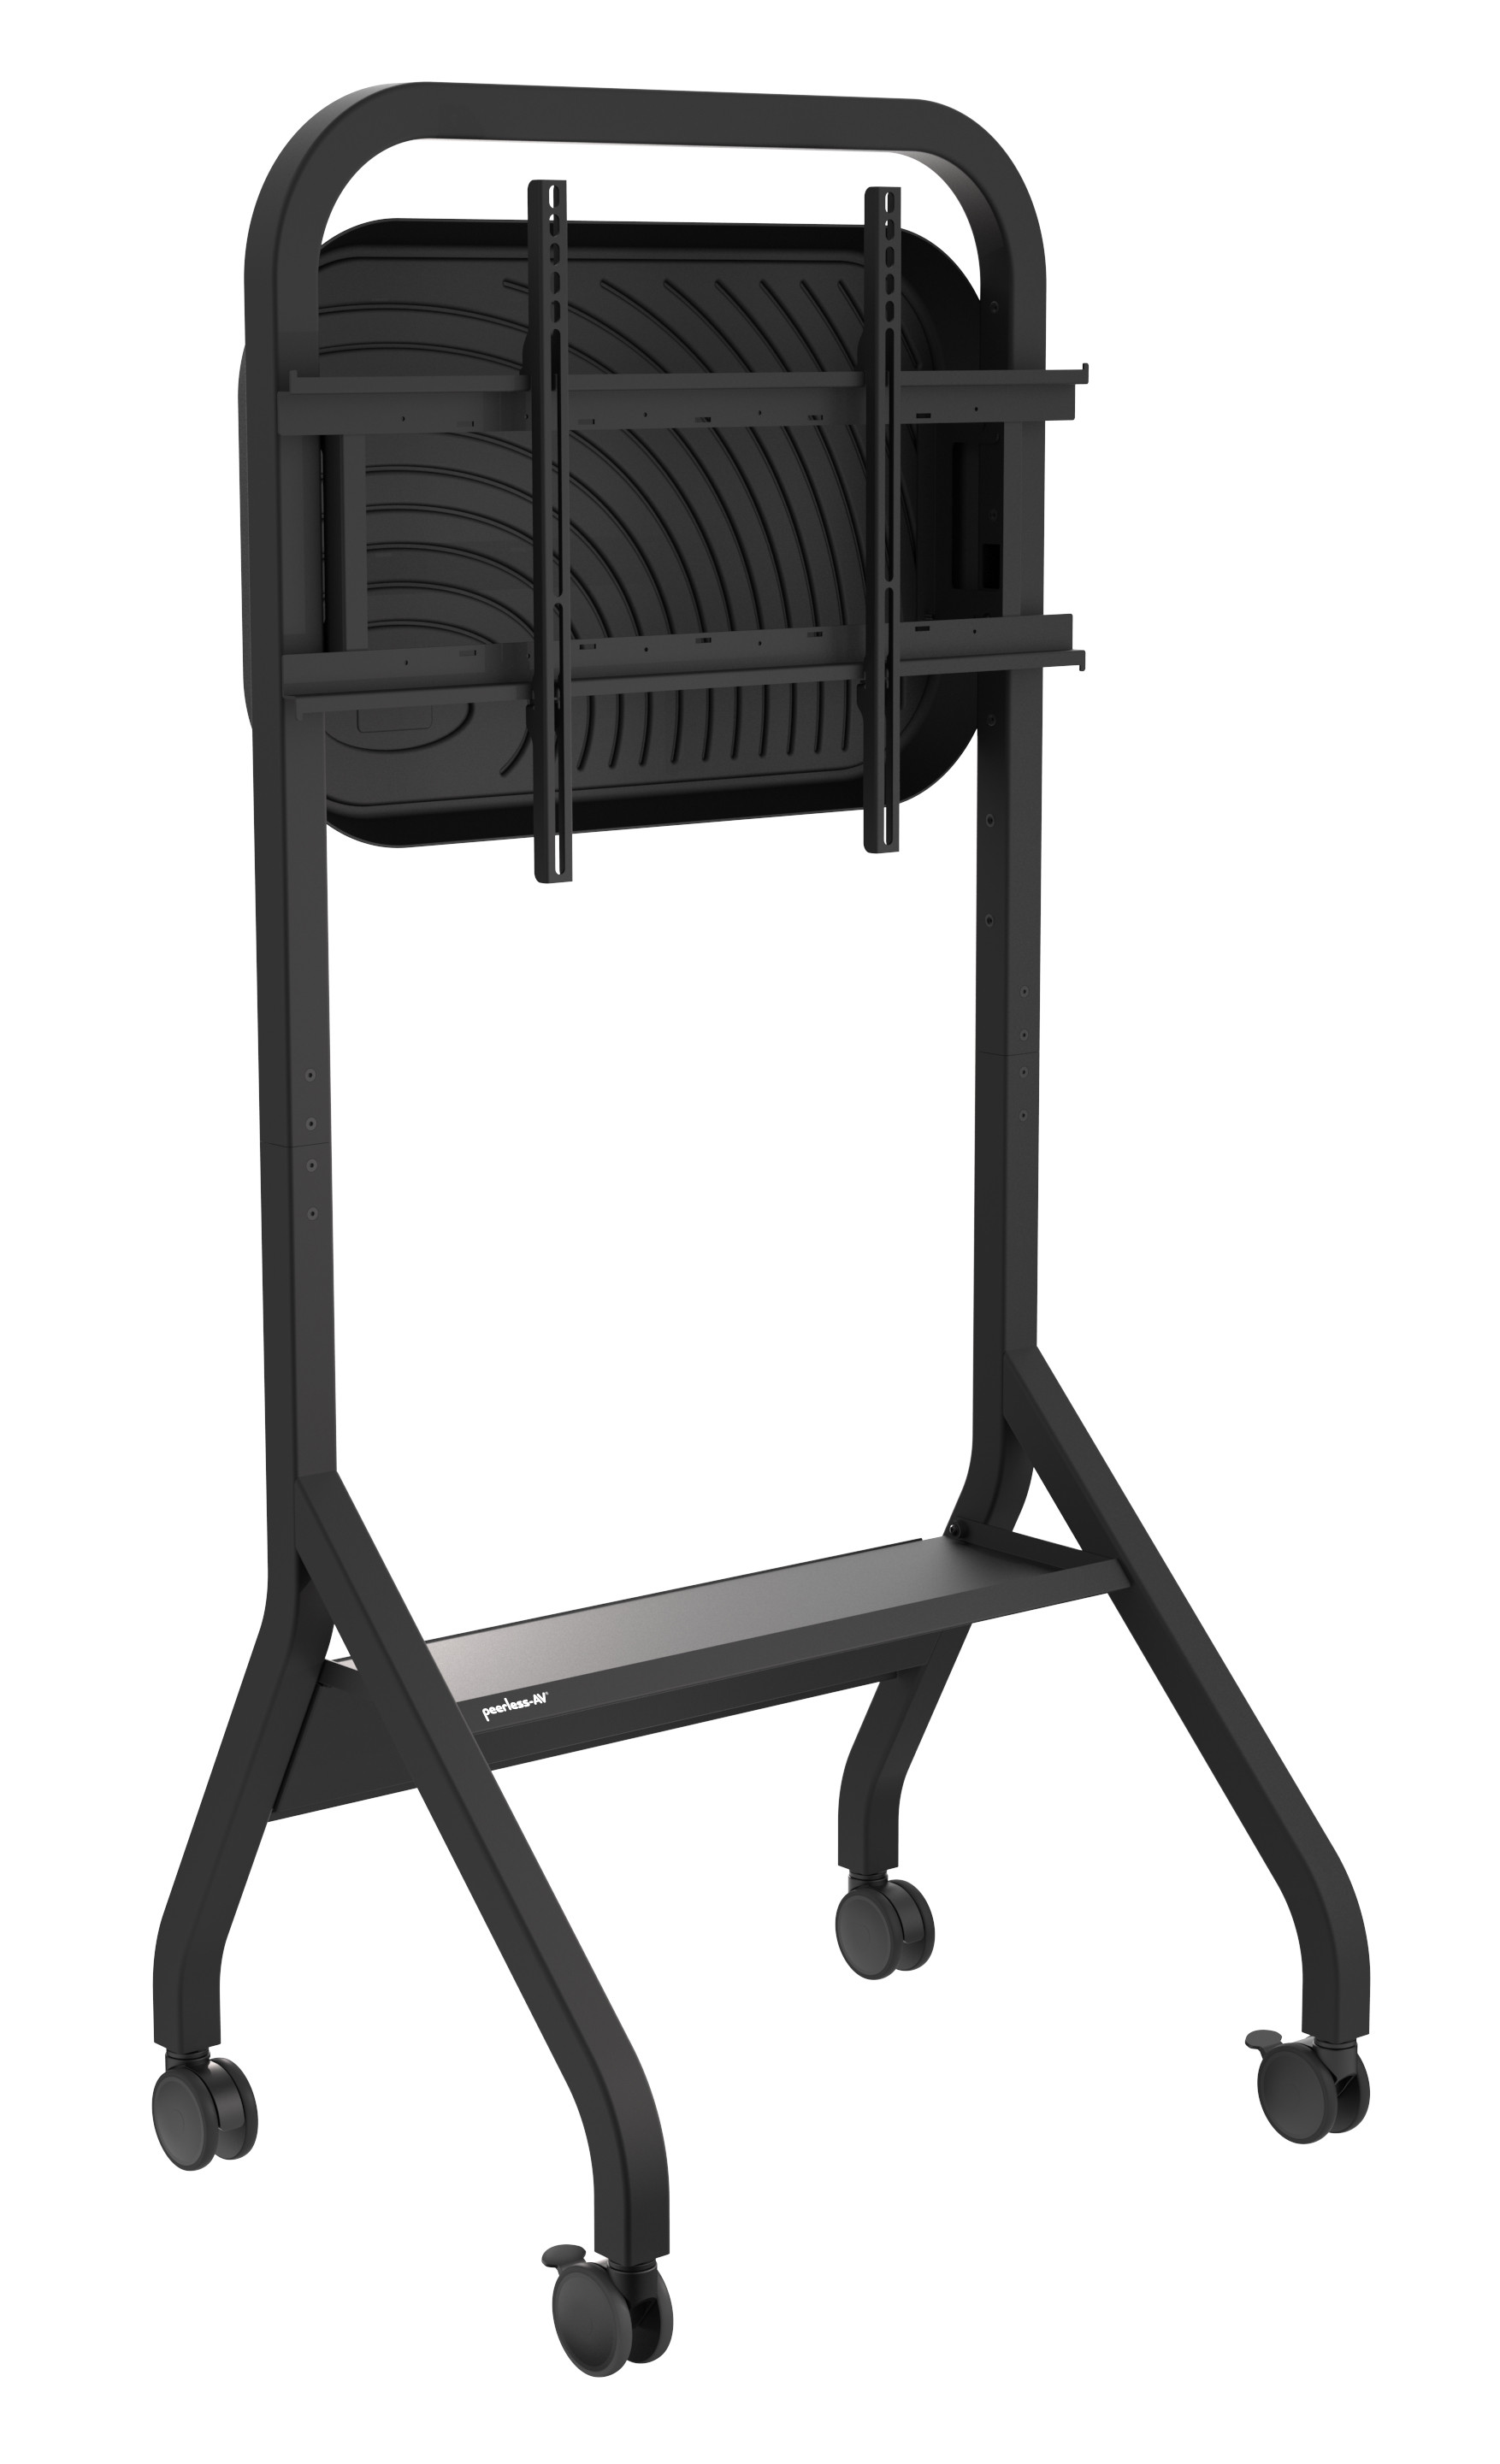 Peerless-AV-SR898-EUK-Trolley-met-legbord-voor-beeldschermen-tot-110-inch-tot-136kg-tot-VESA-900x600-kleur-zwart-met-achterpaneel